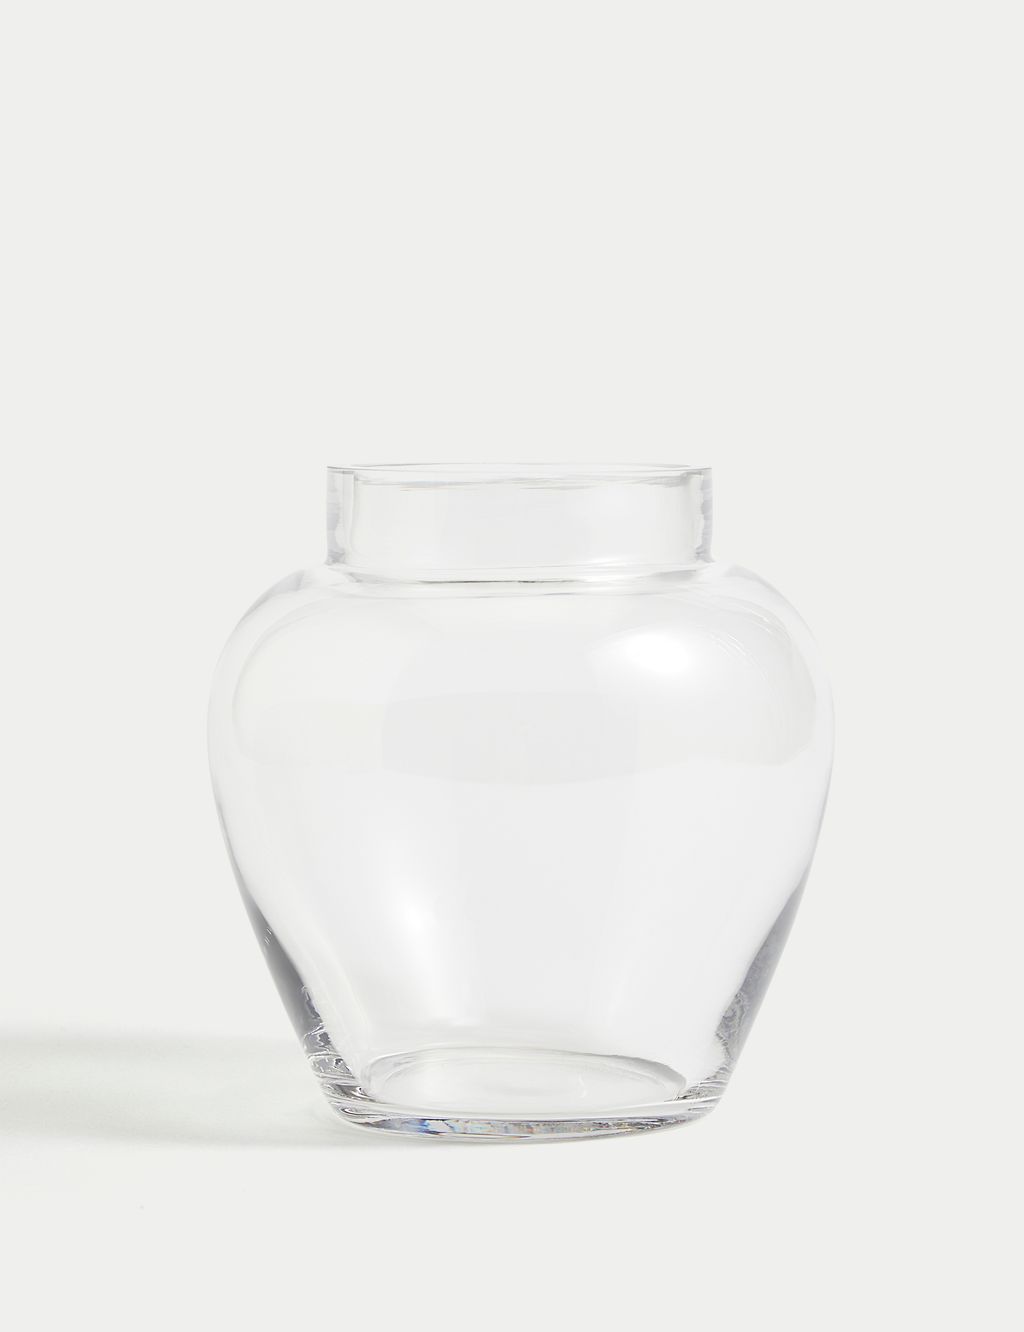 Medium Urn Vase 1 of 5